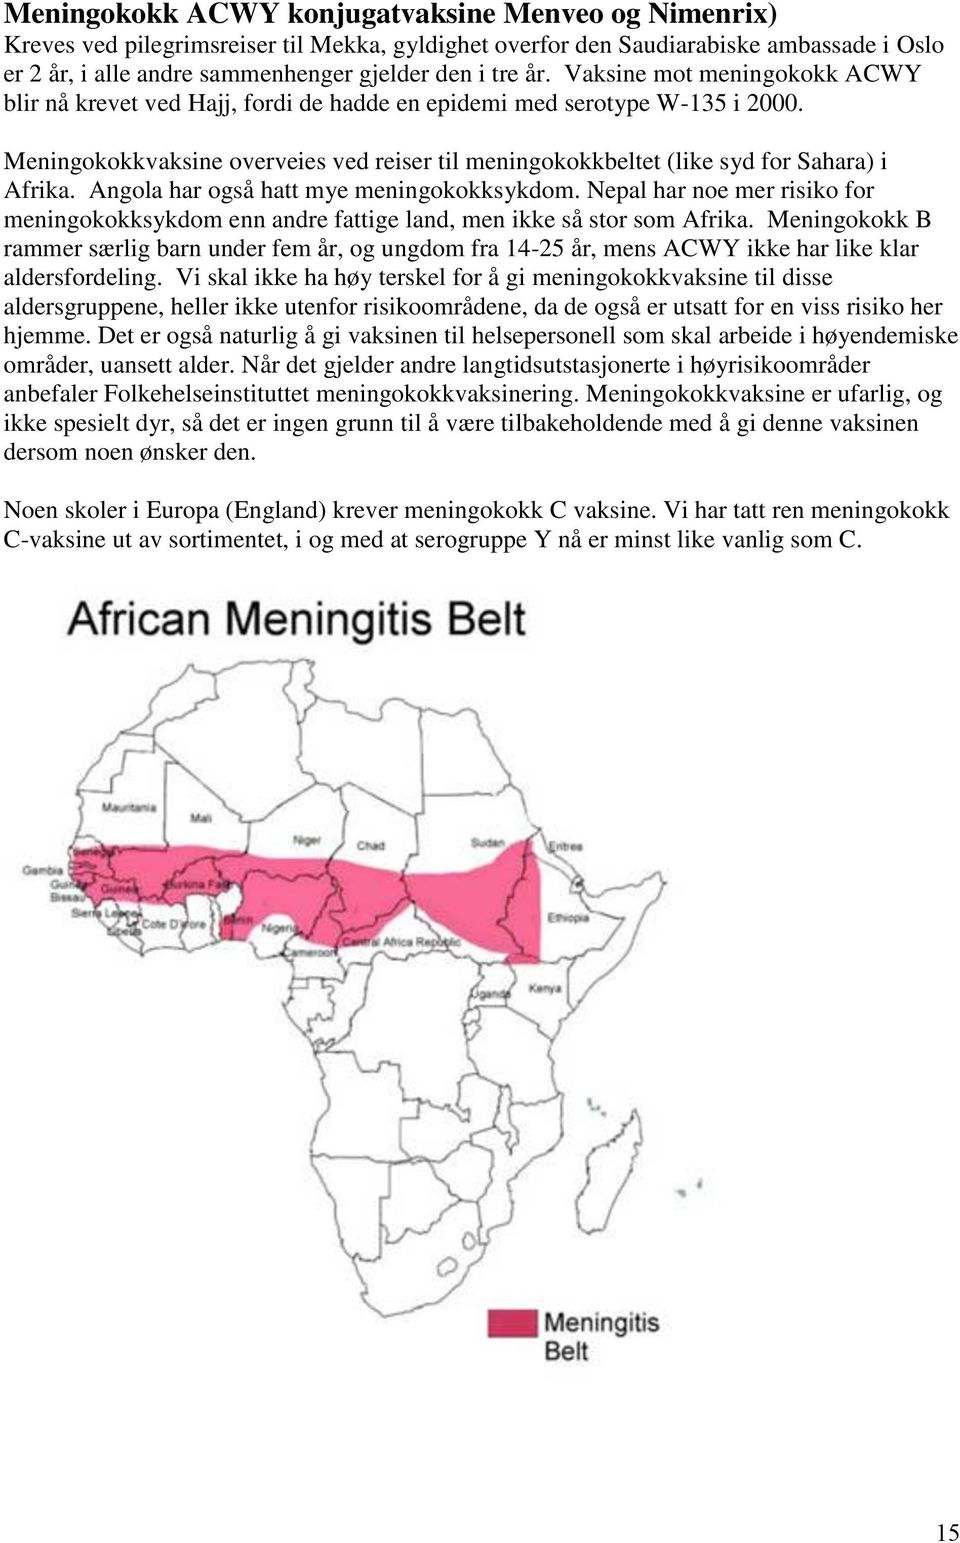 Angola har også hatt mye meningokokksykdom. Nepal har noe mer risiko for meningokokksykdom enn andre fattige land, men ikke så stor som Afrika.